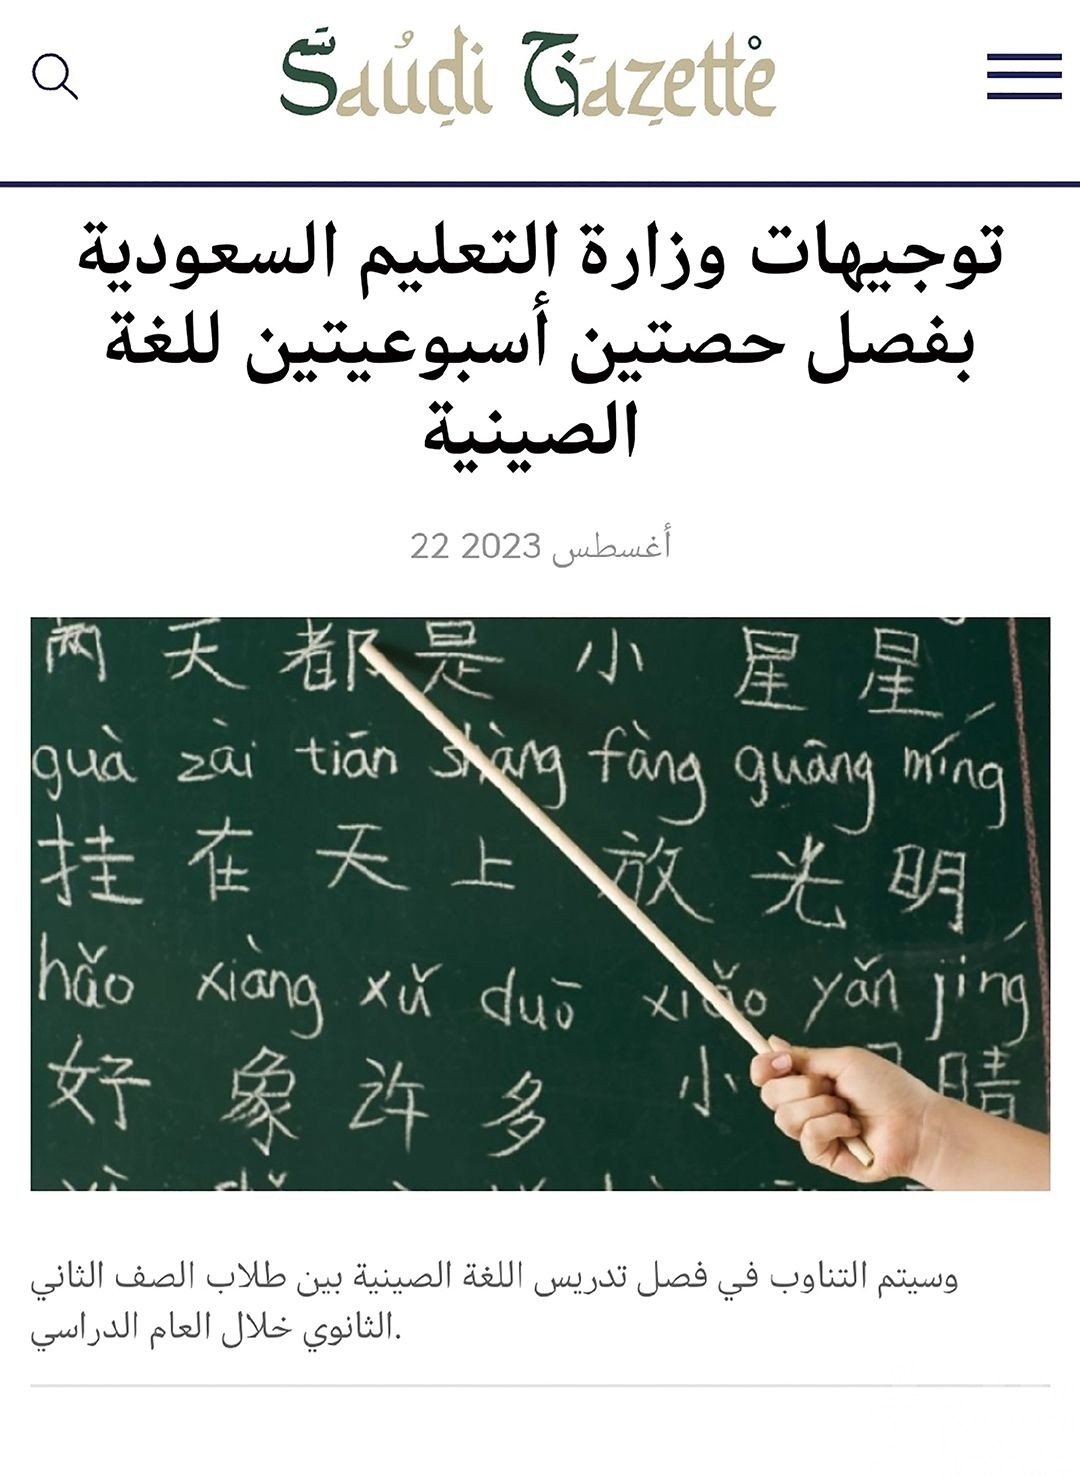 沙特將中文定為第二外語